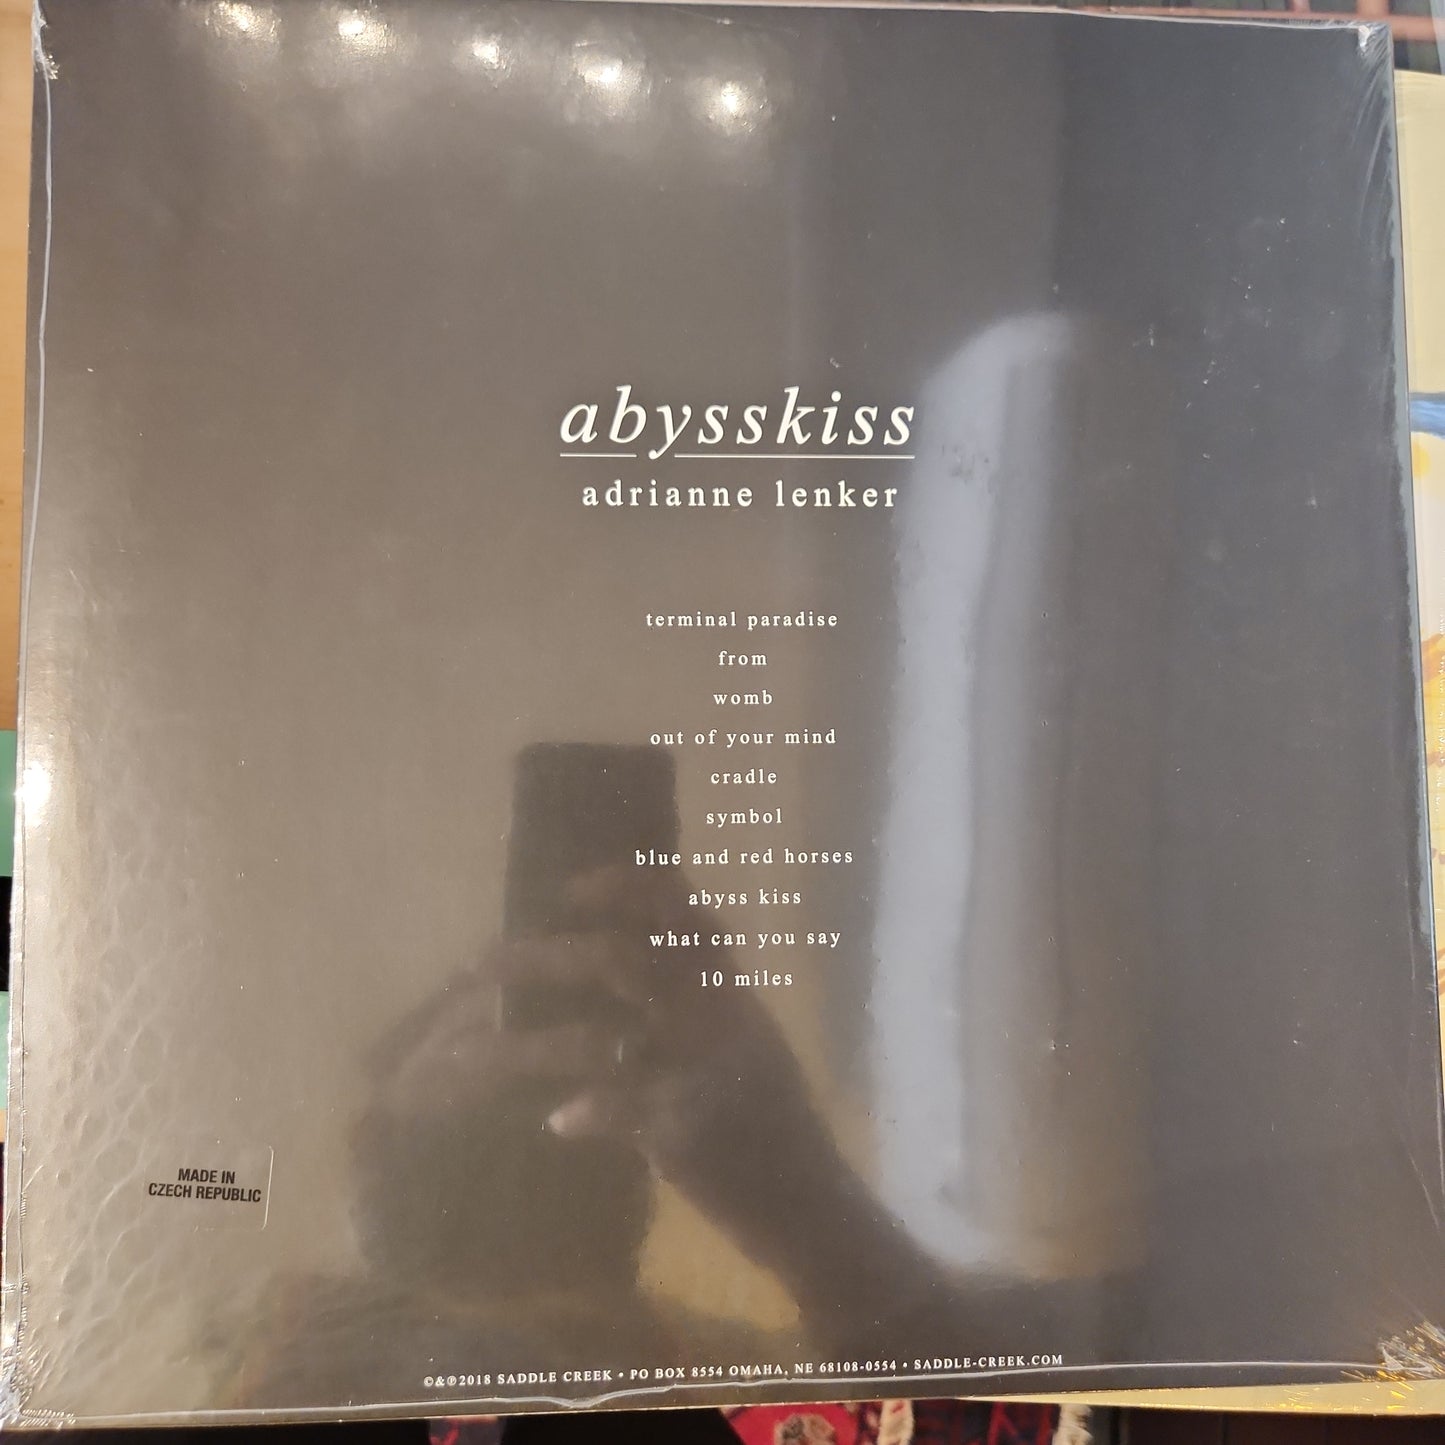 Adrianne Lenker - Abysskiss - Vinyl LP